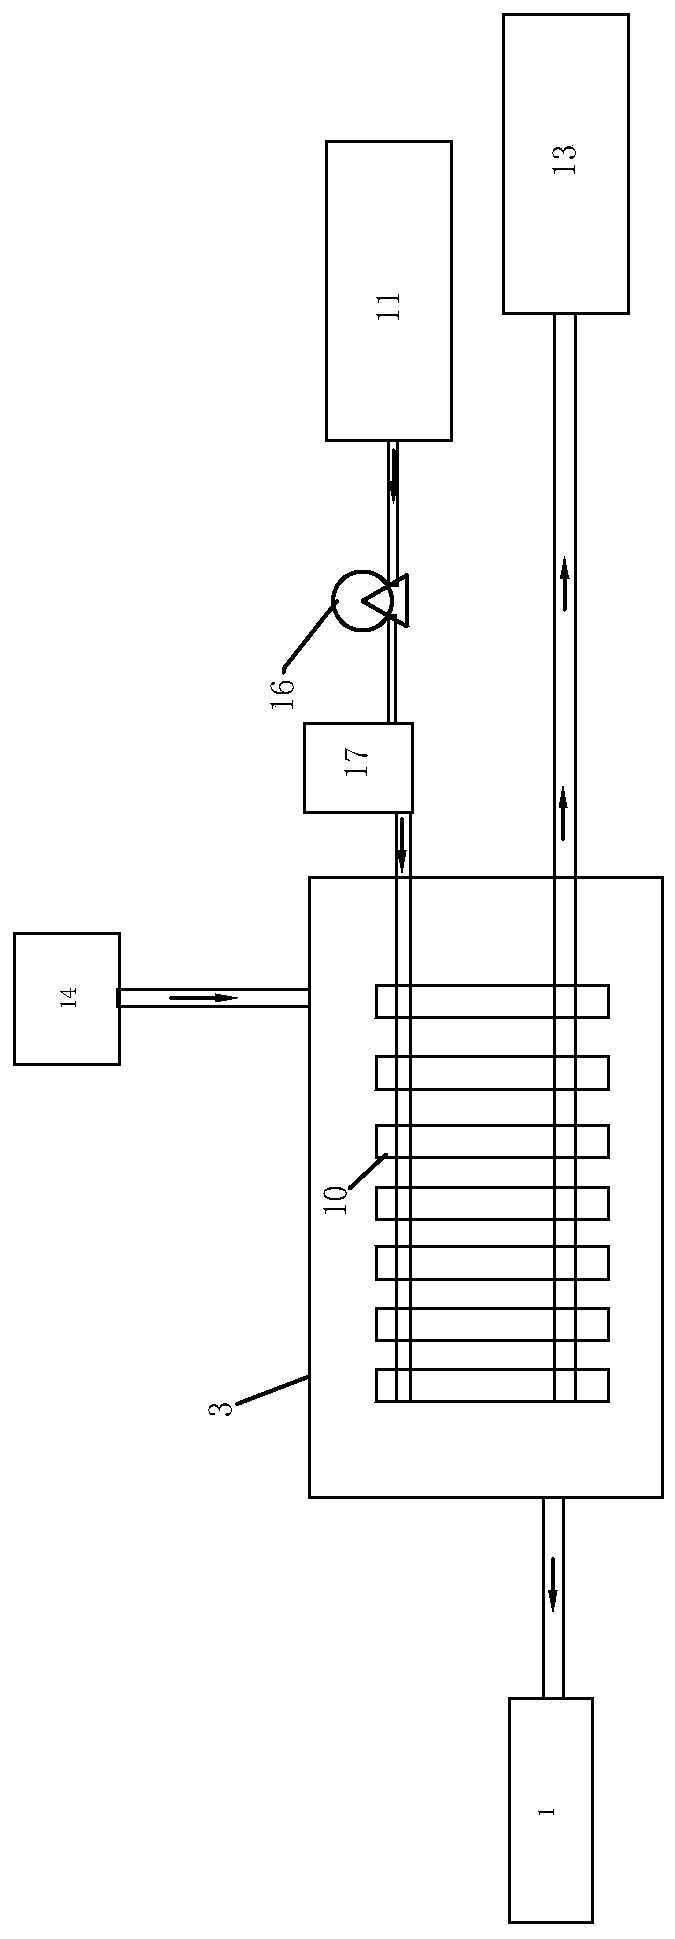 High-pressure steam thermal desorption repair system